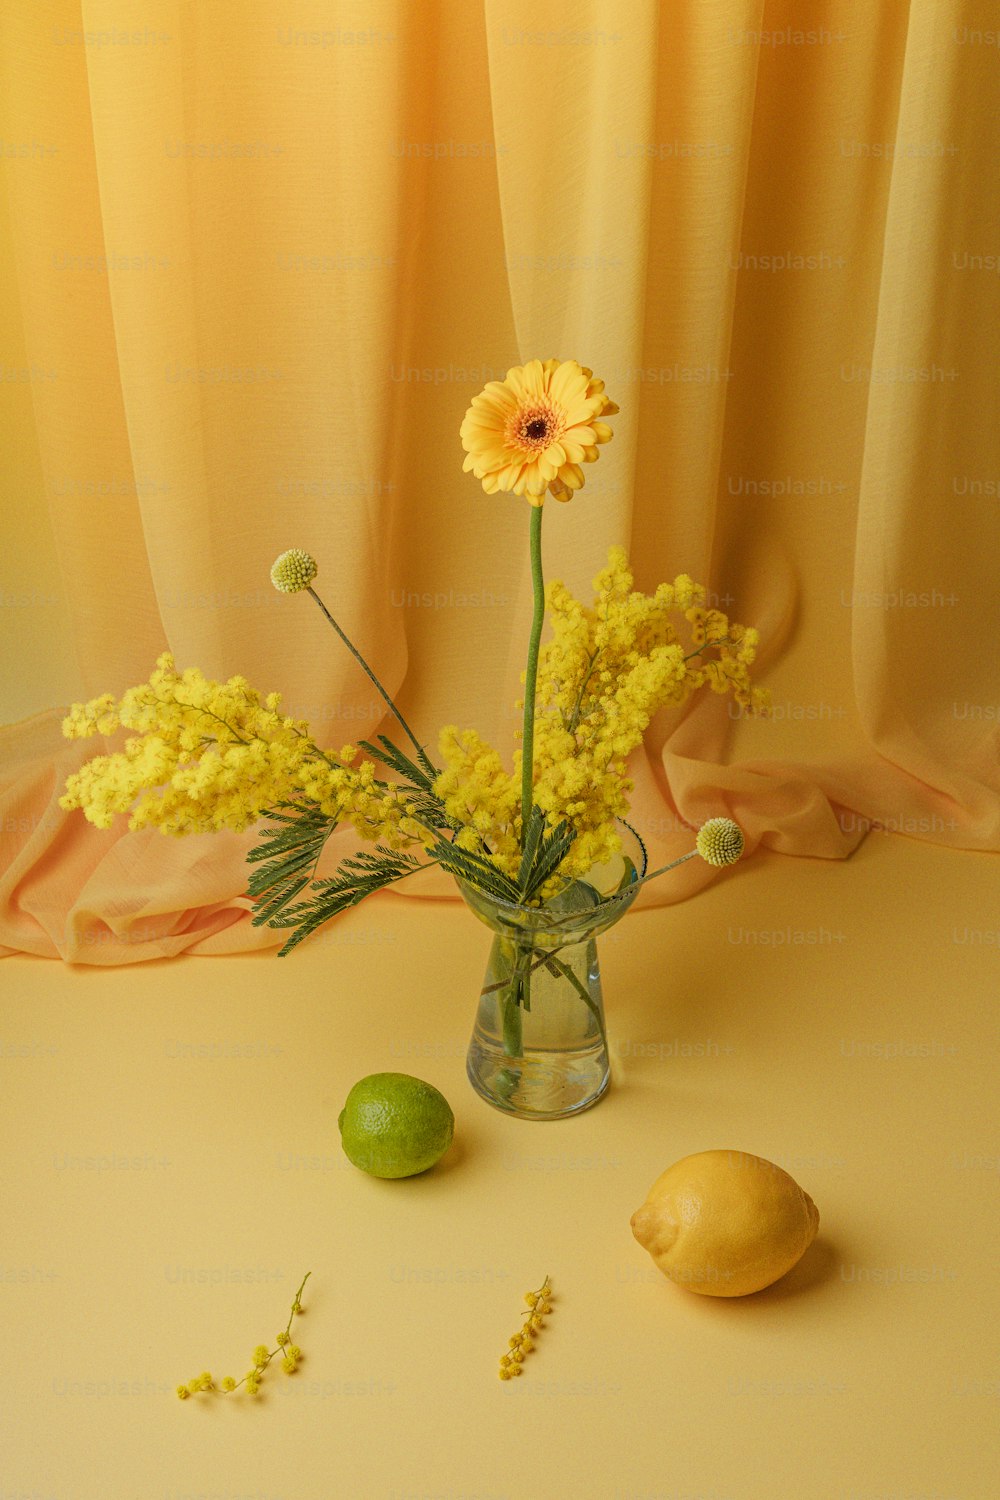 테이블에 꽃과 레몬이 있는 꽃병